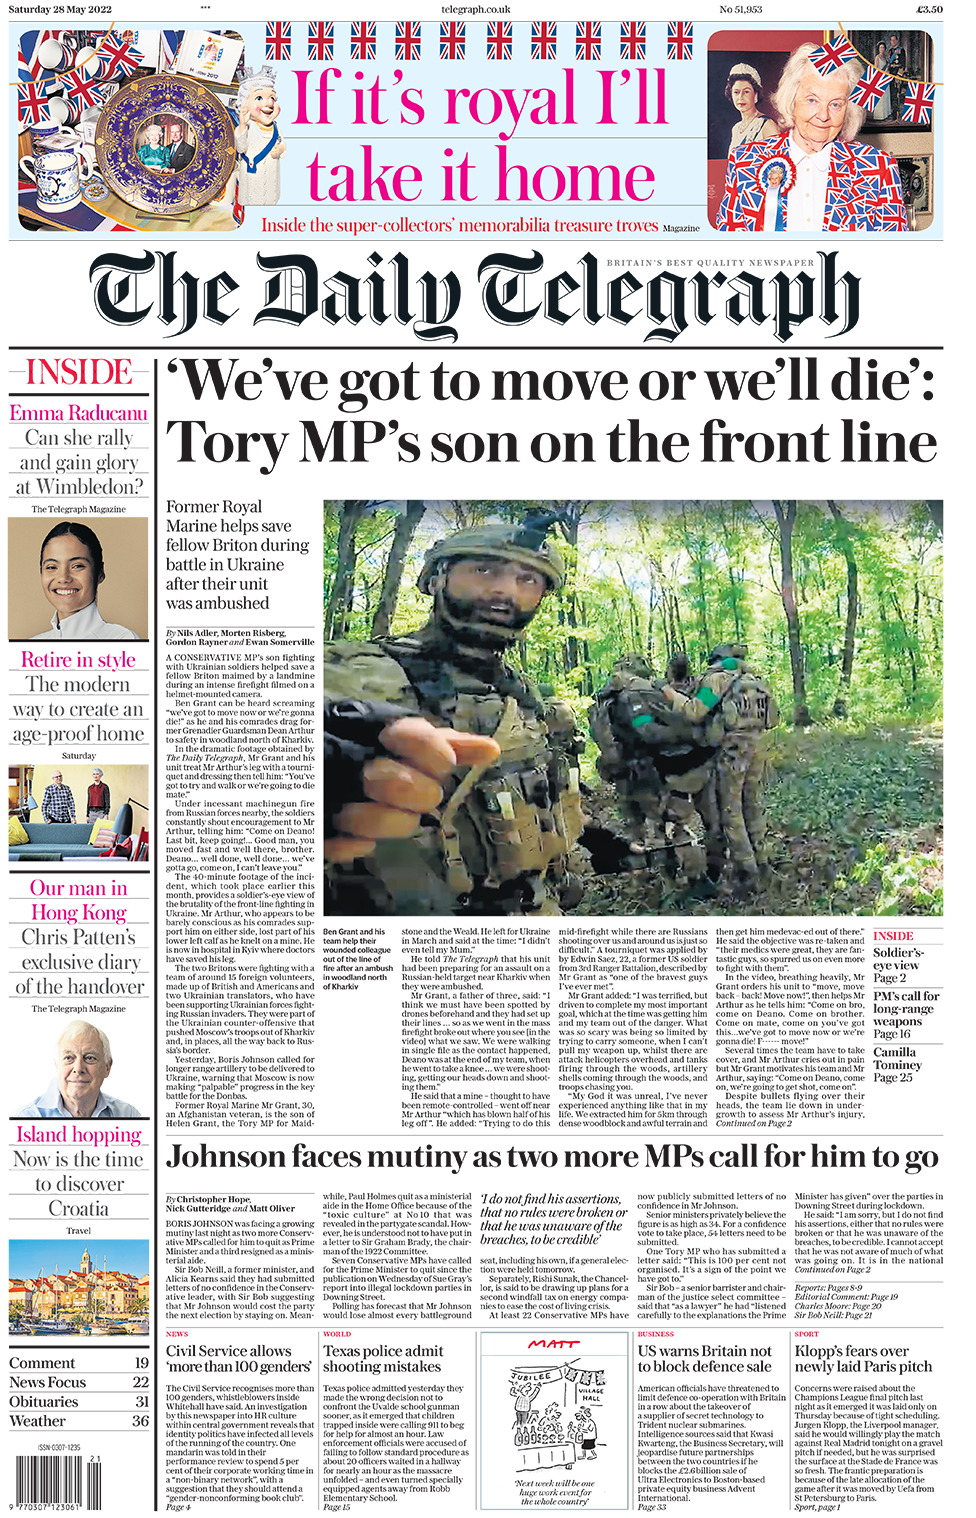 Заголовок в Telegraph гласит: «Мы должны двигаться, иначе мы умрем»: сын депутата-консерватора на передовой».